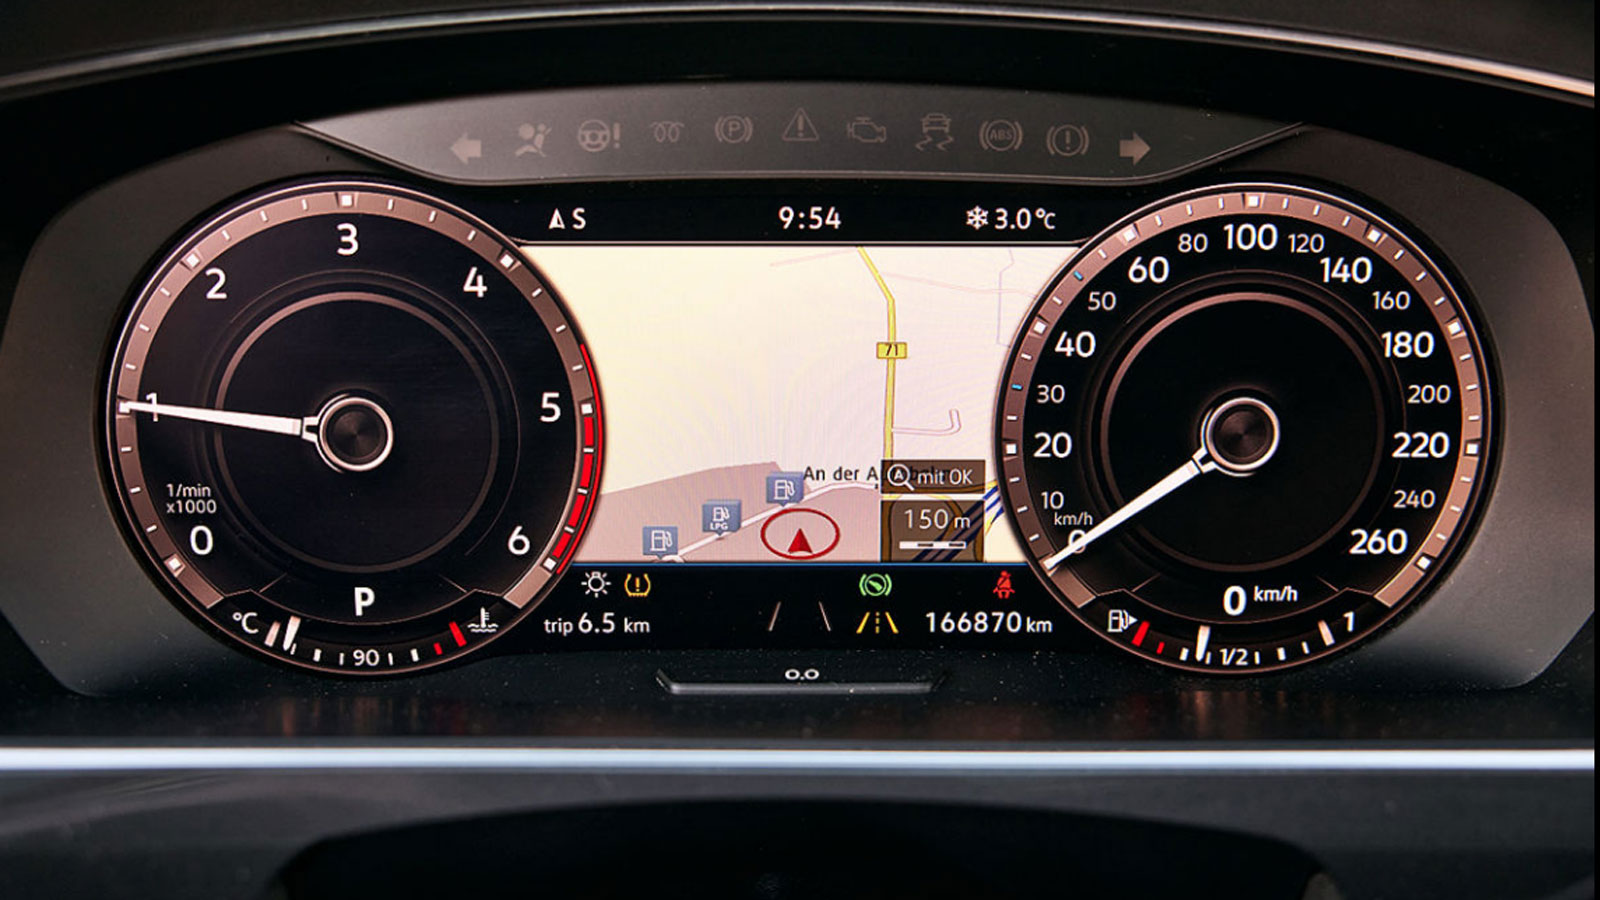 VW Tiguan diesel του 2018 με 170.000 χλμ: Θα το έπαιρνες;